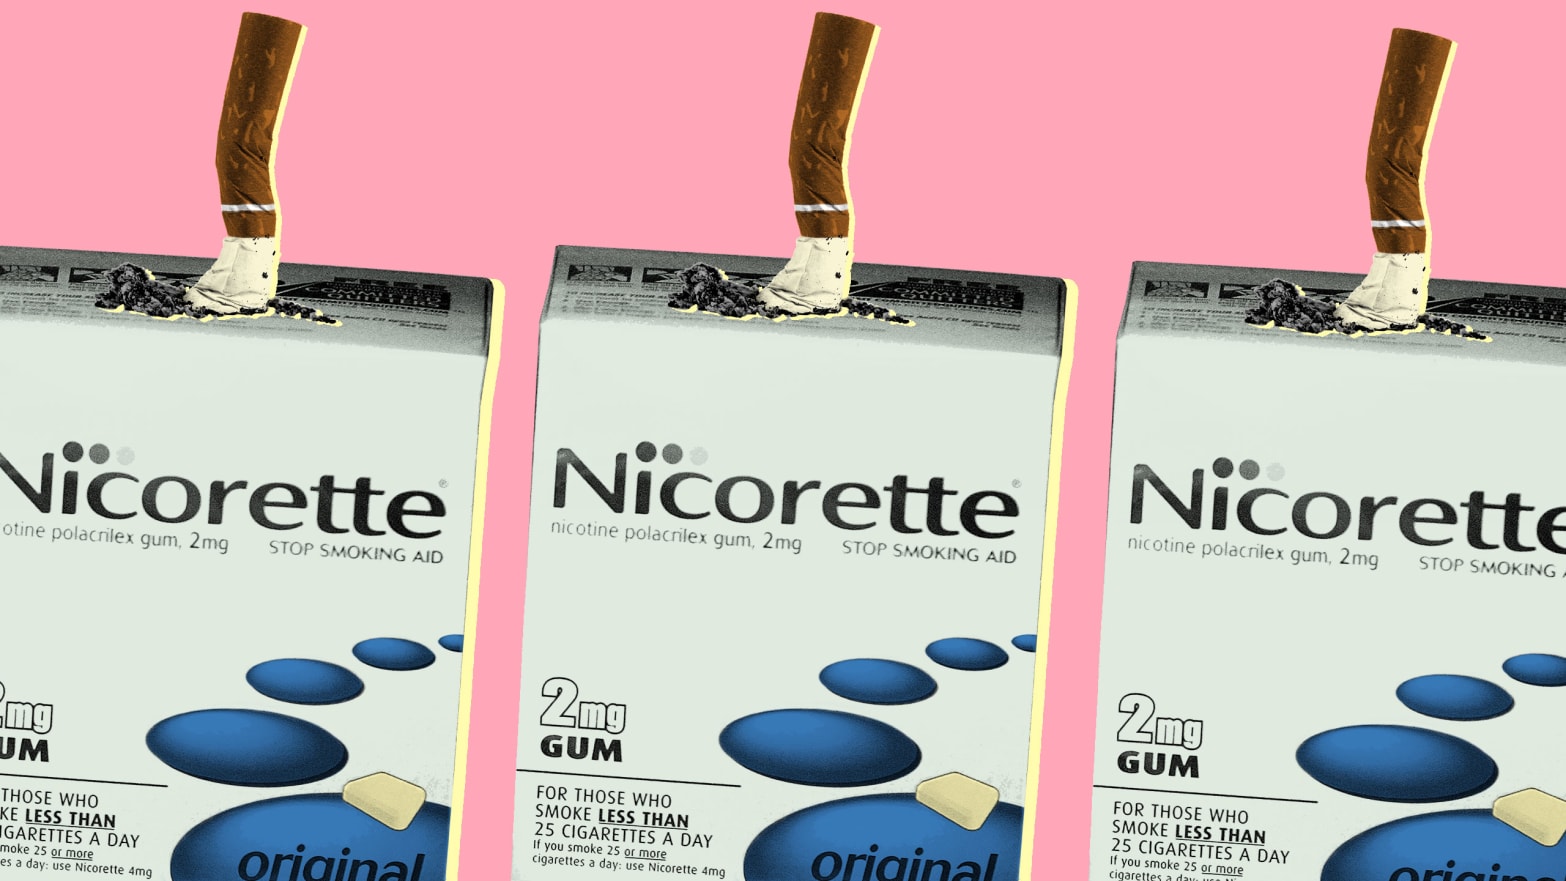 nicorette cigarette nicotine addiction tobacco safe healthy gum patch e cig cigarette ecigarette pastel millennial